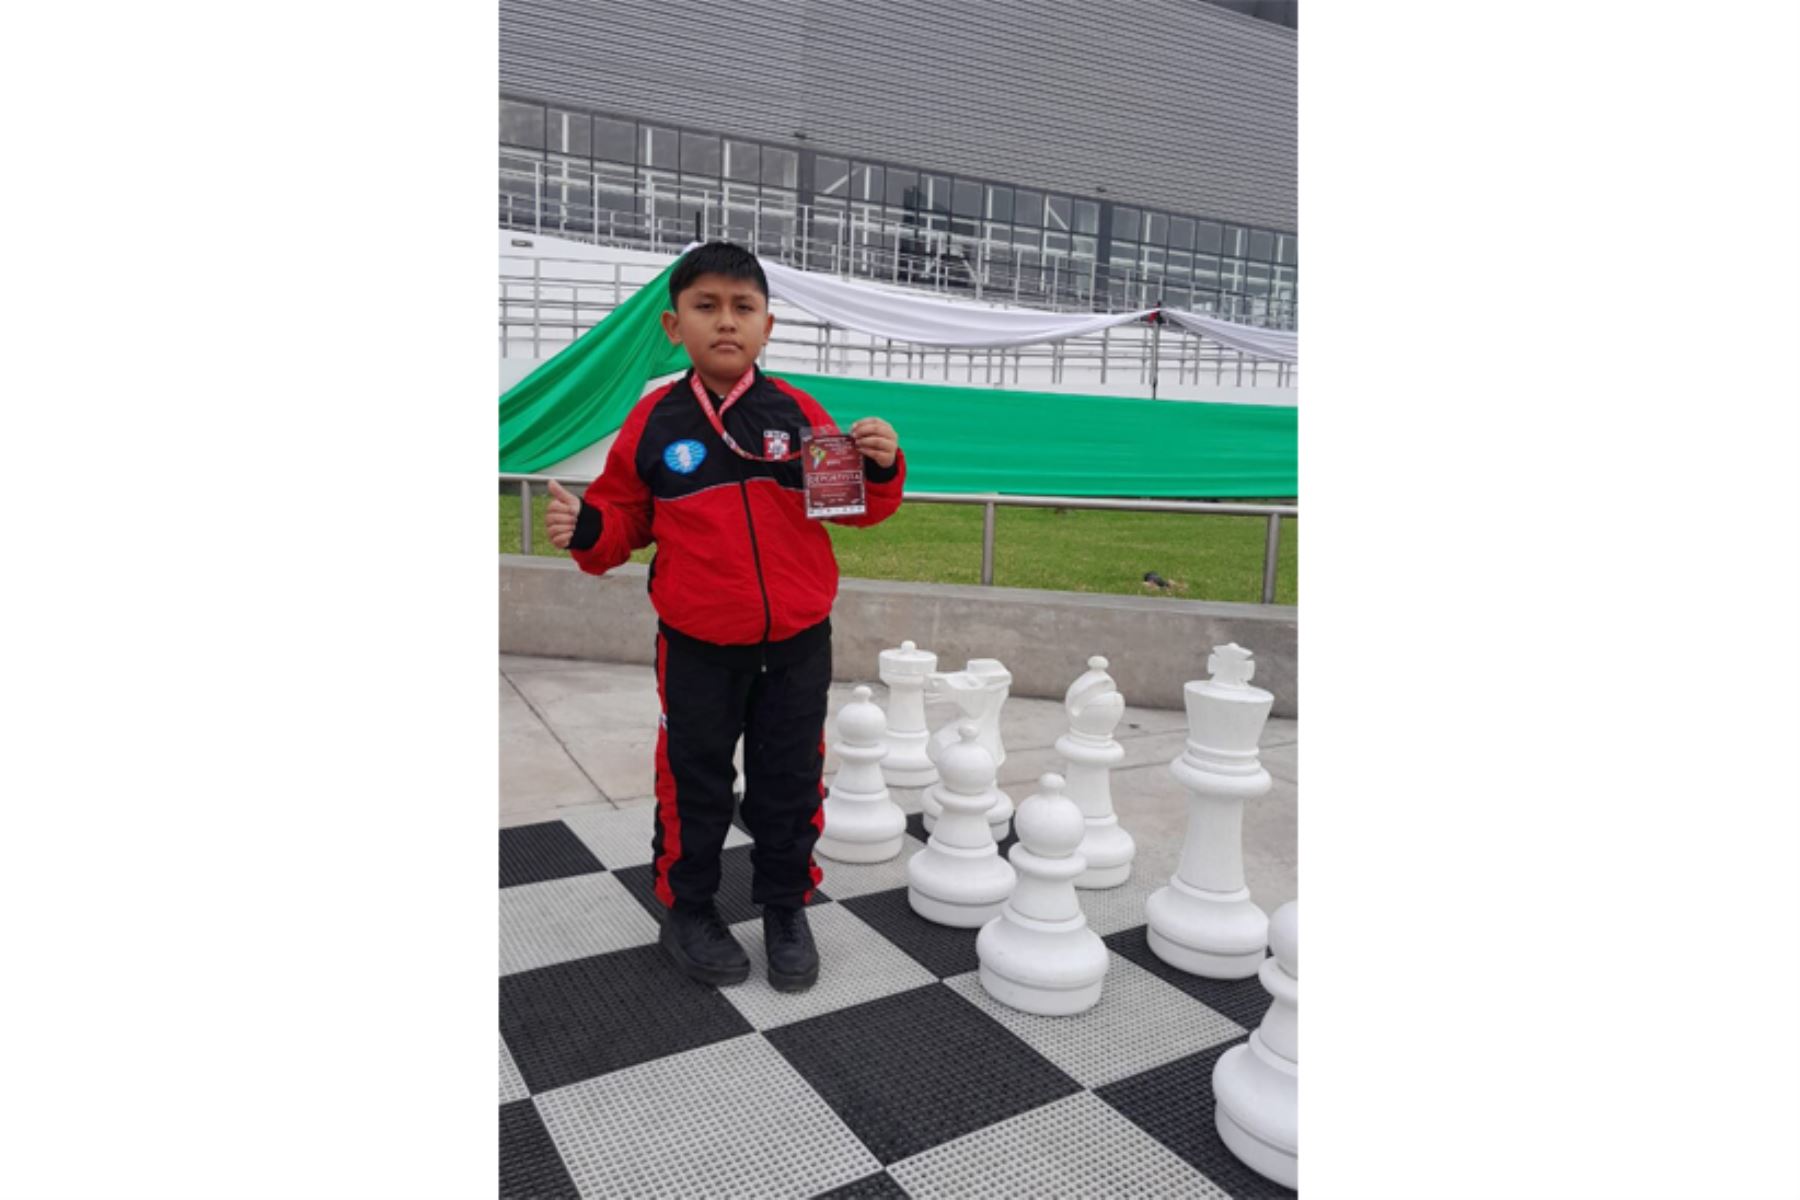 Con solo 9 años de edad, Dorian Villanueva es un verdadero prodigio del ajedrez. A su corta edad ya ha ganado varios torneos nacionales. ANDINA/Difusión